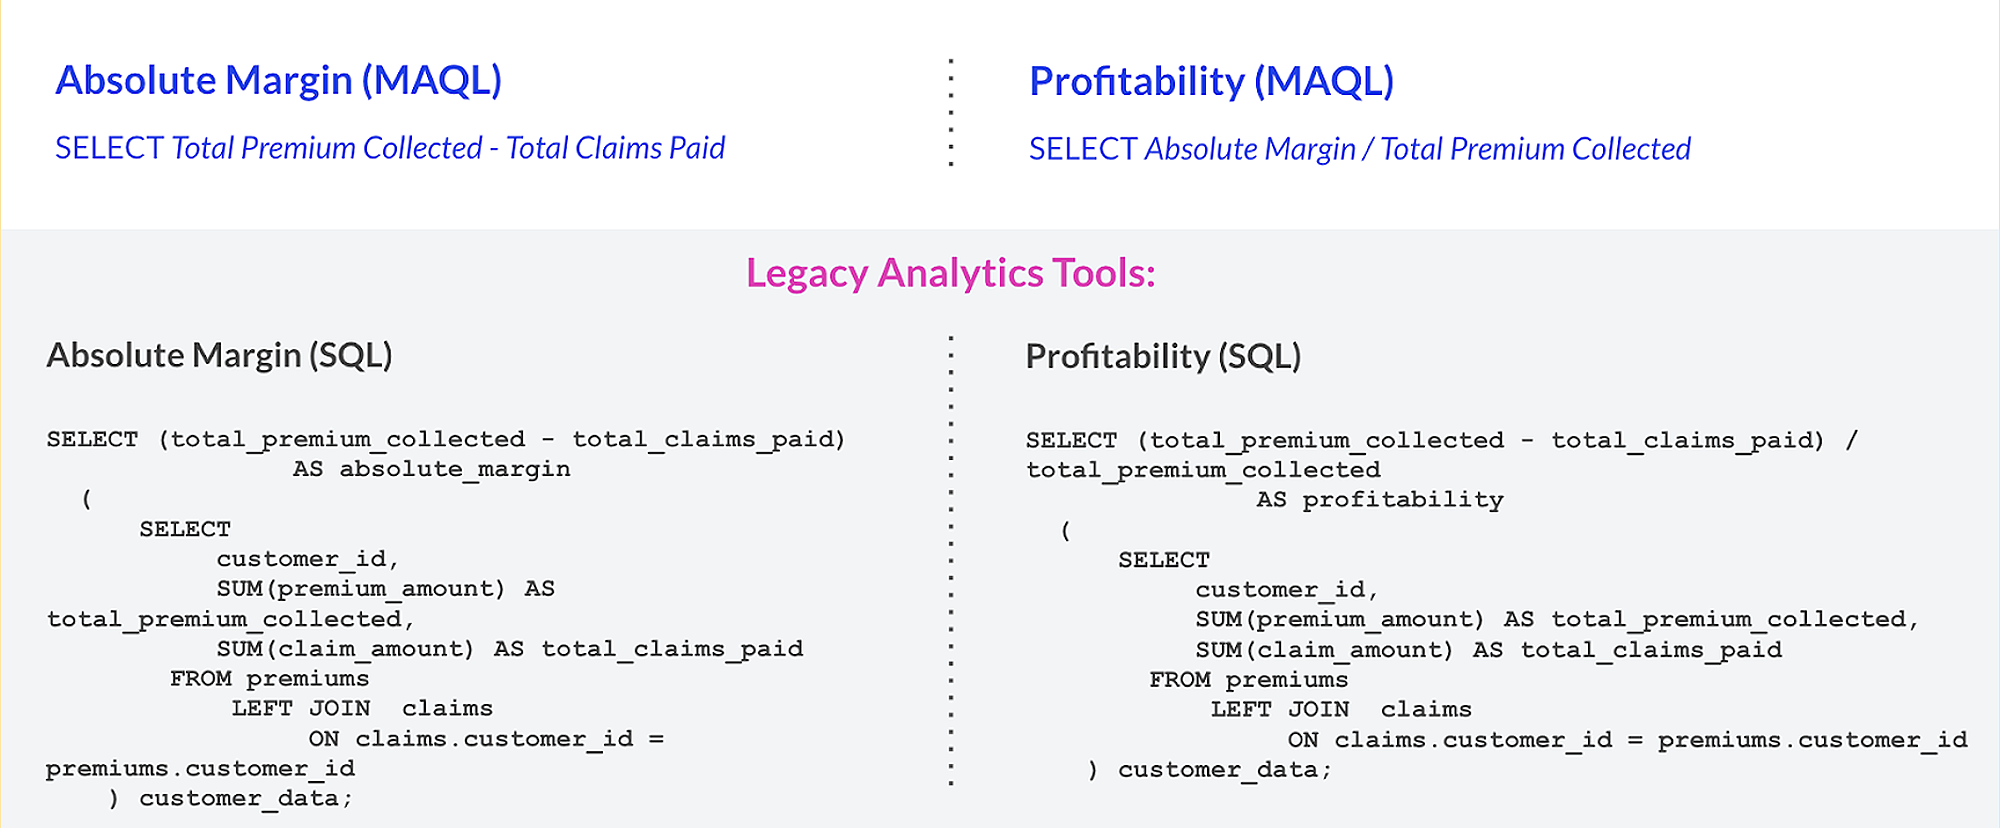 SQL vs. MAQL